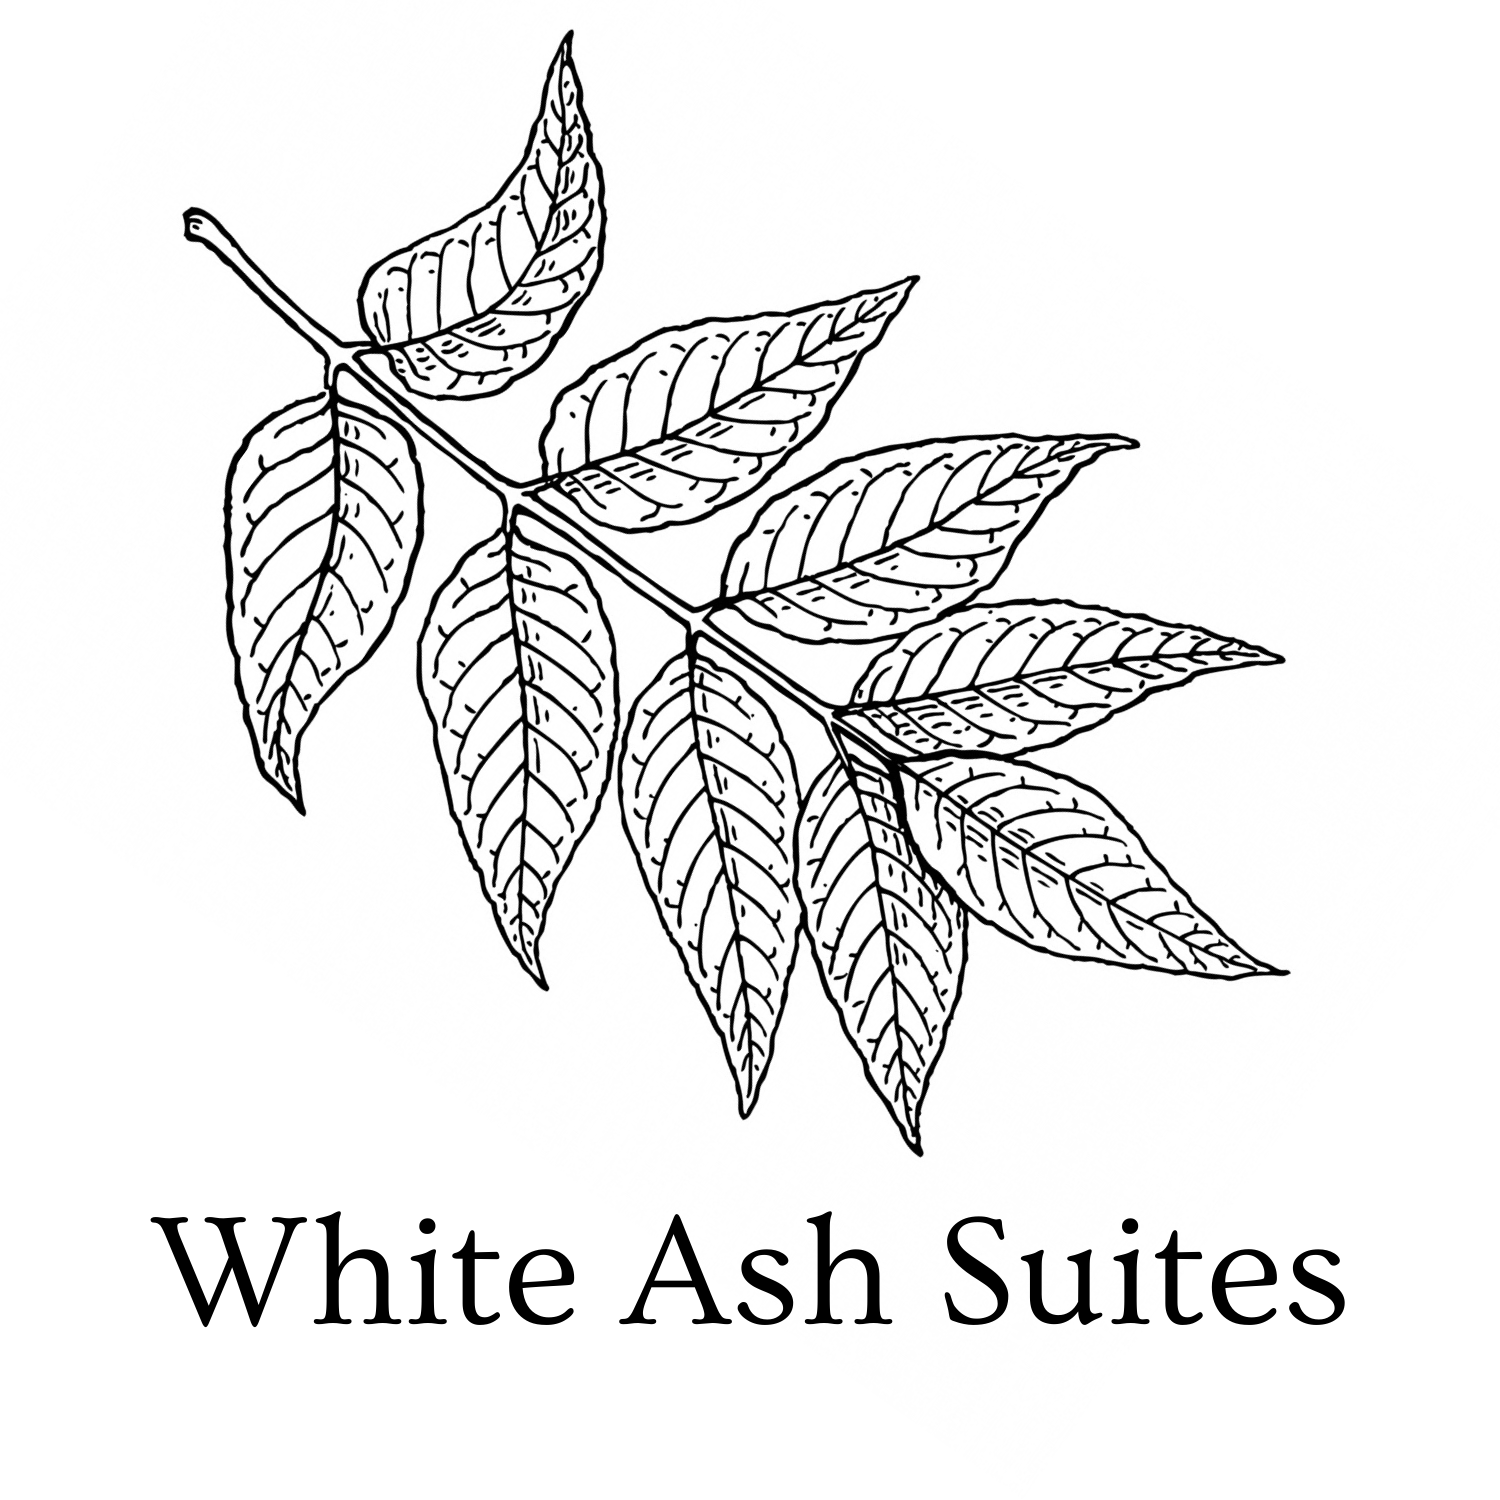 White Ash Suites